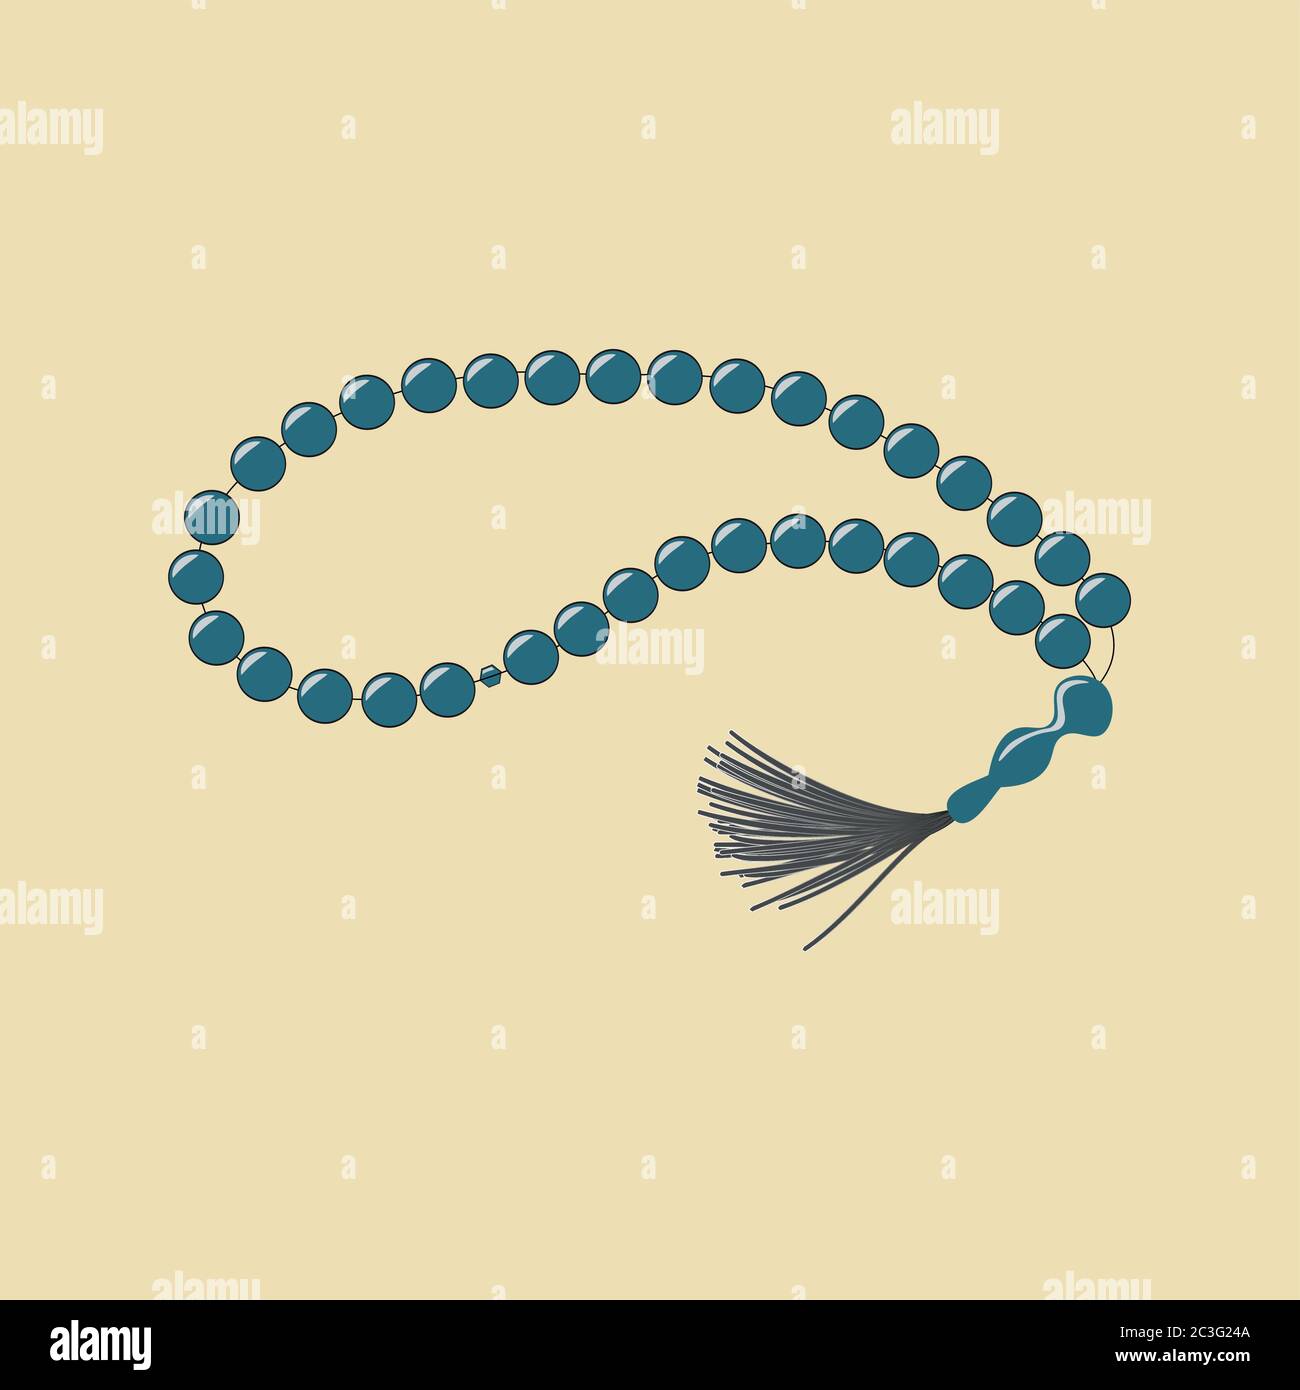 Jeu de perles utilisé par les musulmans pour suivre le comptage en tasbih Illustration de Vecteur